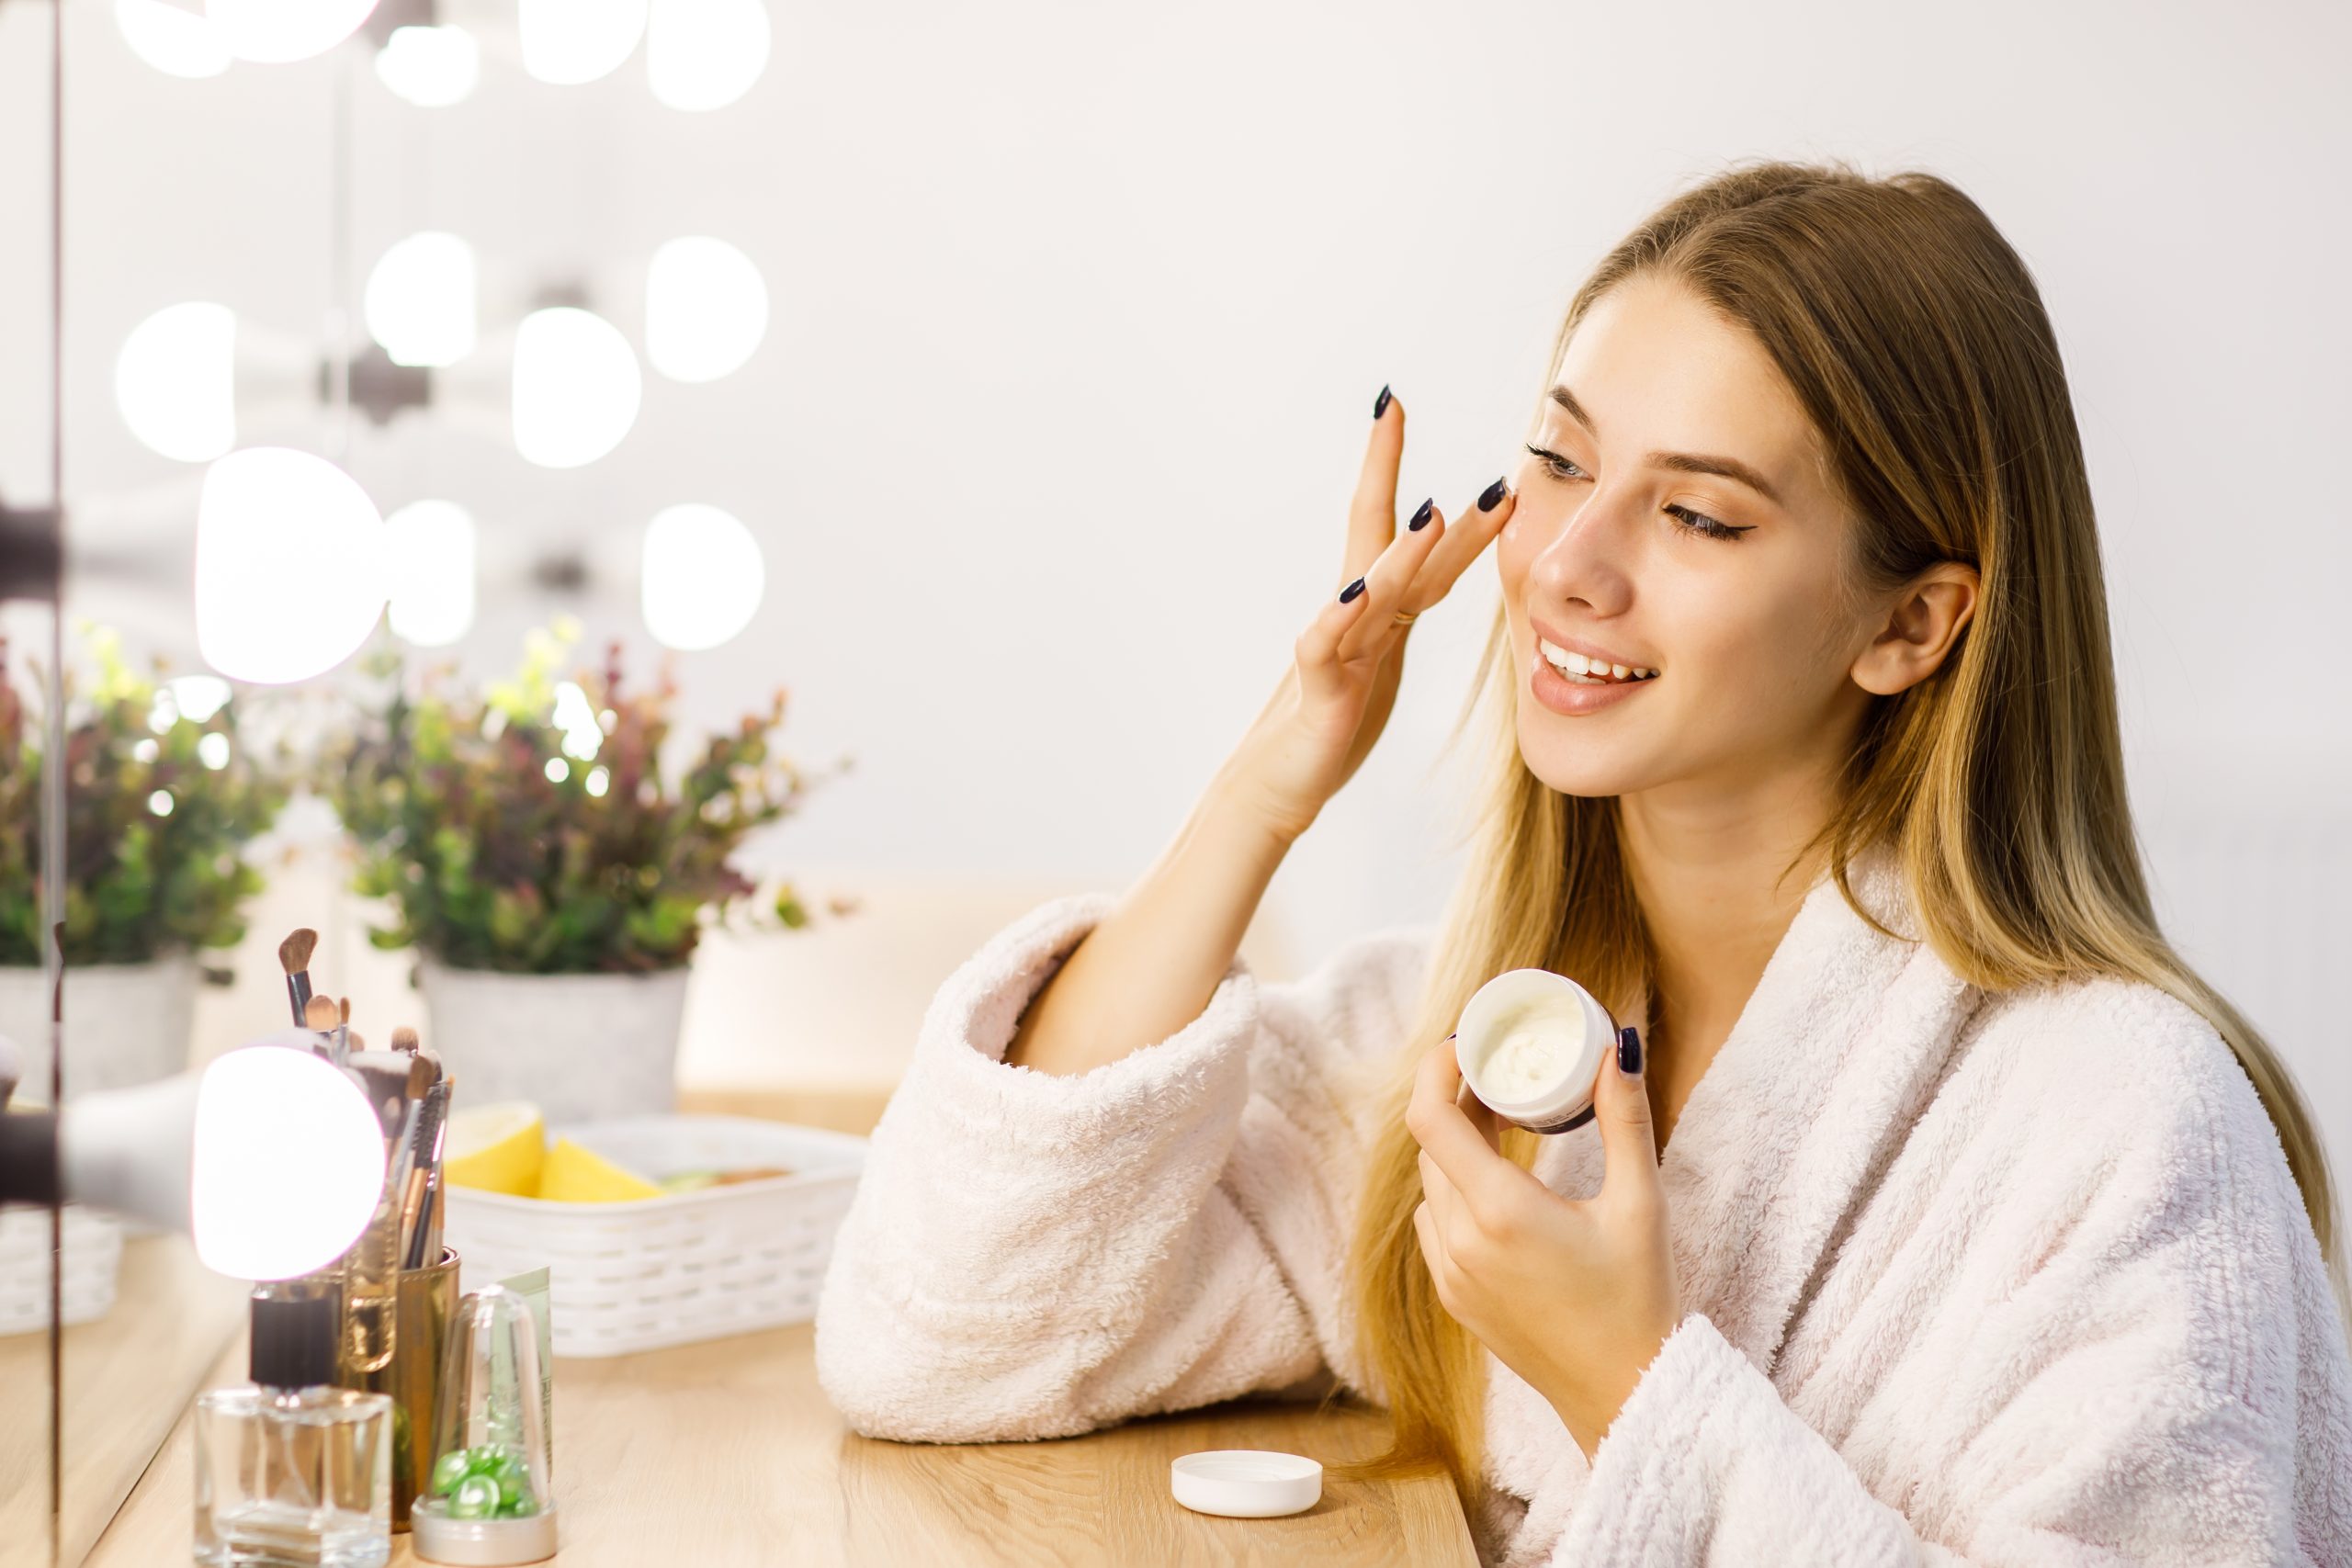 Featured image for “Segmento de higiene pessoal, perfumaria e cosméticos cresceu 8,6% até outubro”